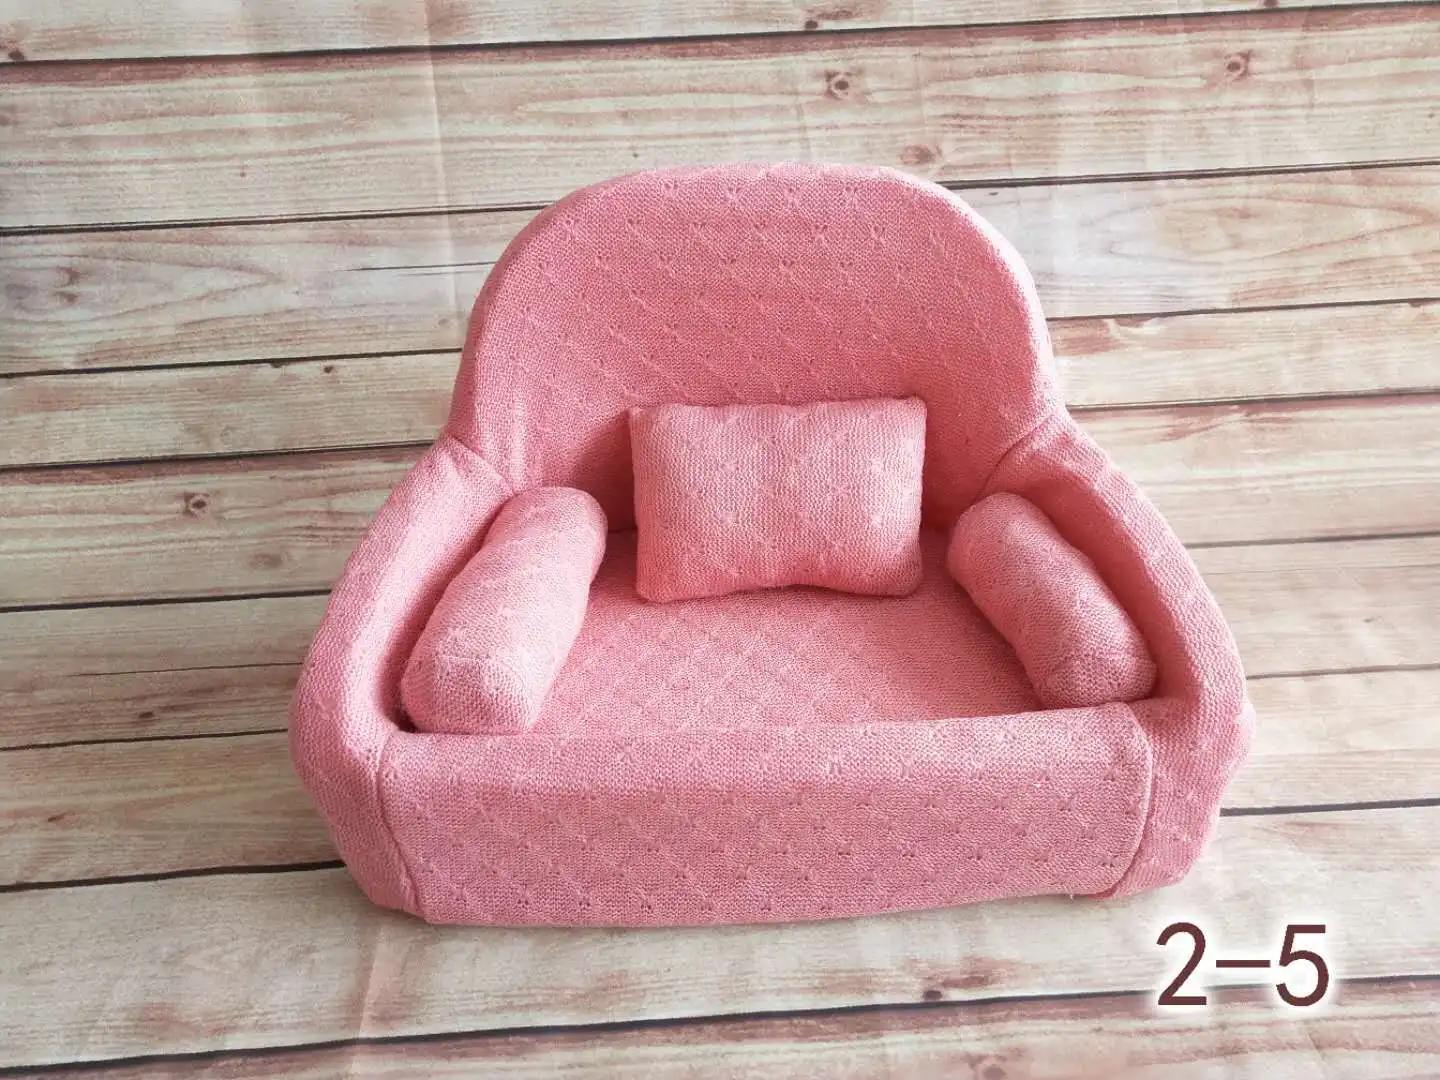 Новорожденный детский диван полнолуние фотосъемка реквизит мини креативный позирующий диван Младенческая съемка аксессуары различные цвета